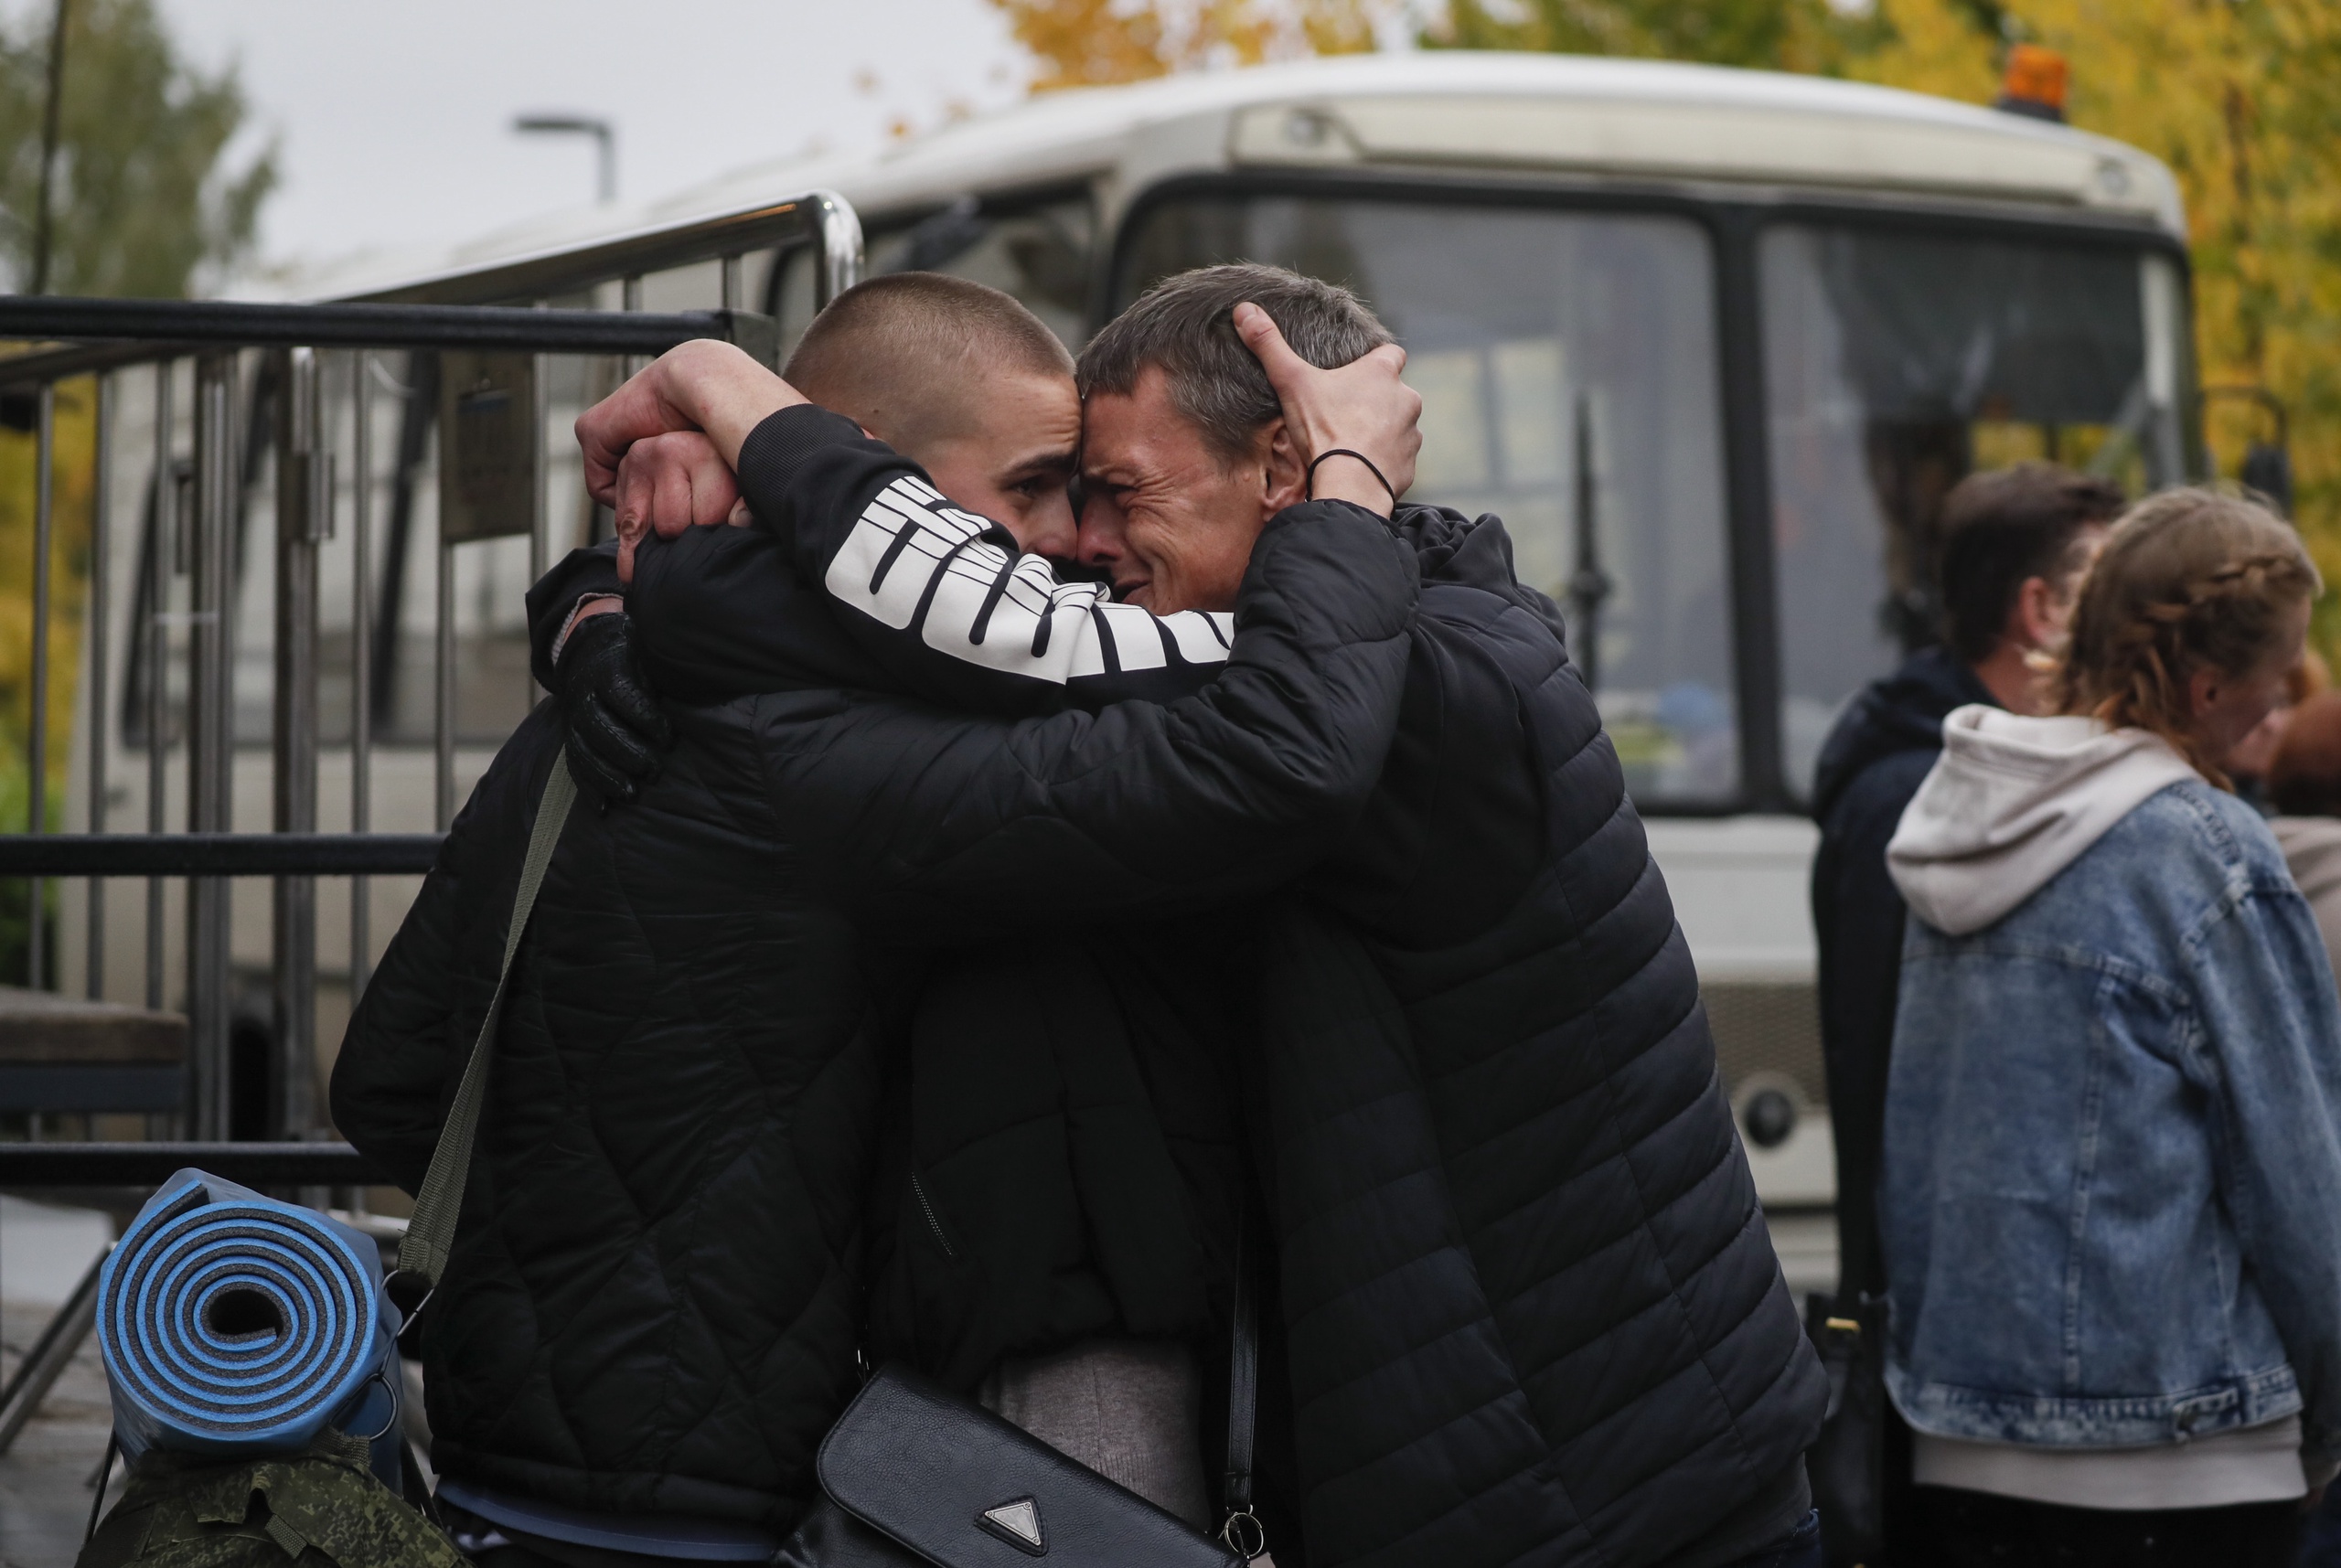 Russische dienstplichtige mannen nemen afscheid van familieleden. Bij de mobilisatieplannen van Poetin is het de bedoeling dat ruim 300.000 reservisten opgeroepen worden om mee te vechten in de oorlog in Oekraïne.